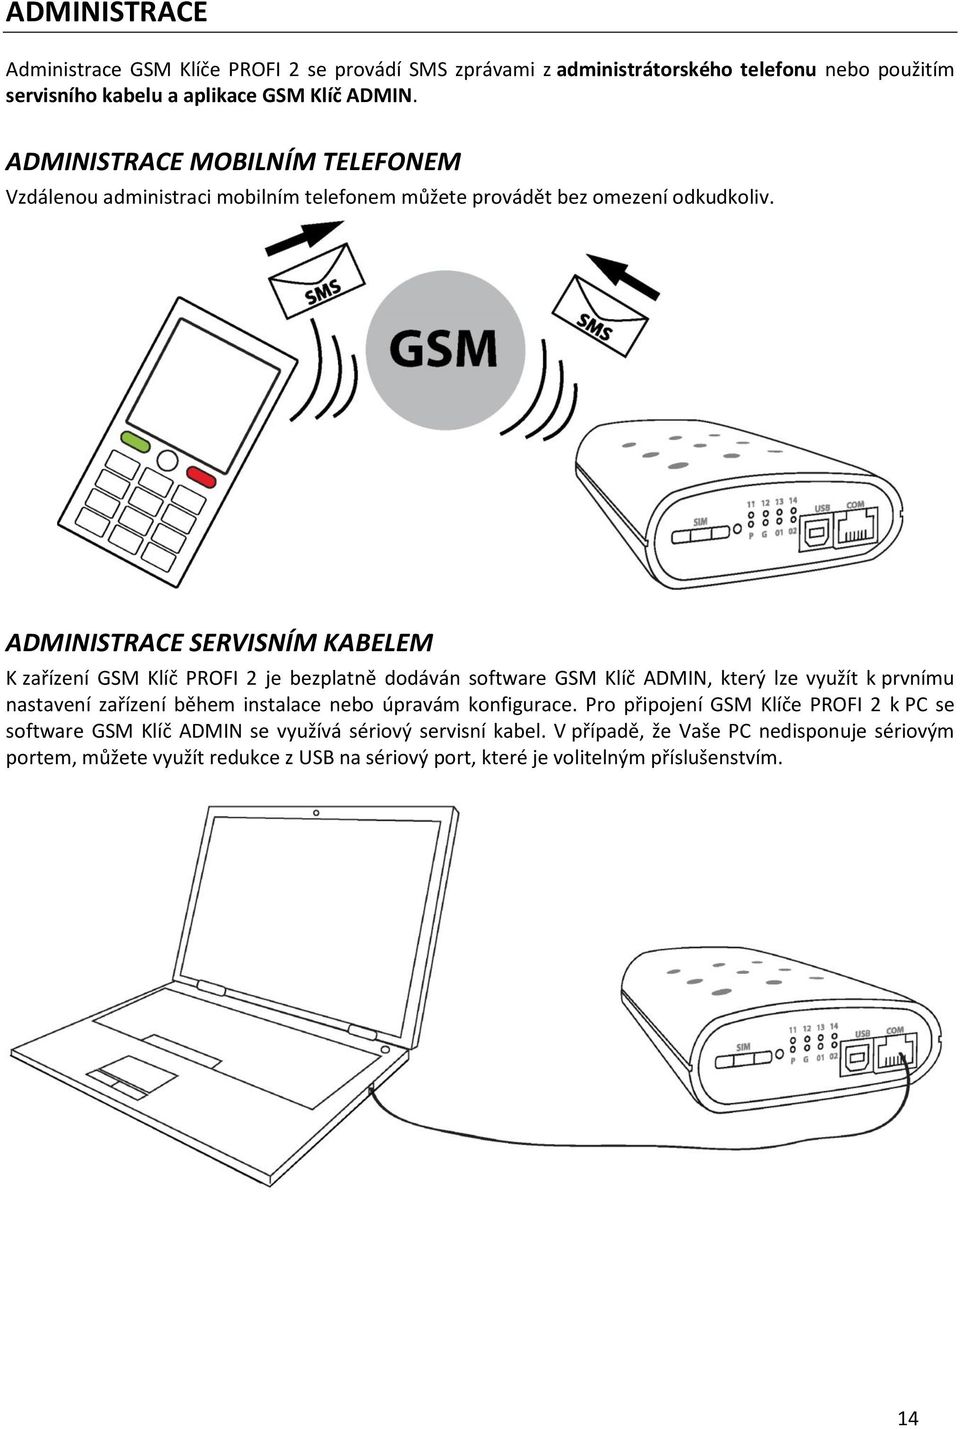 ADMINISTRACE SERVISNÍM KABELEM K zařízení GSM Klíč PROFI 2 je bezplatně dodáván software GSM Klíč ADMIN, který lze využít k prvnímu nastavení zařízení během instalace nebo